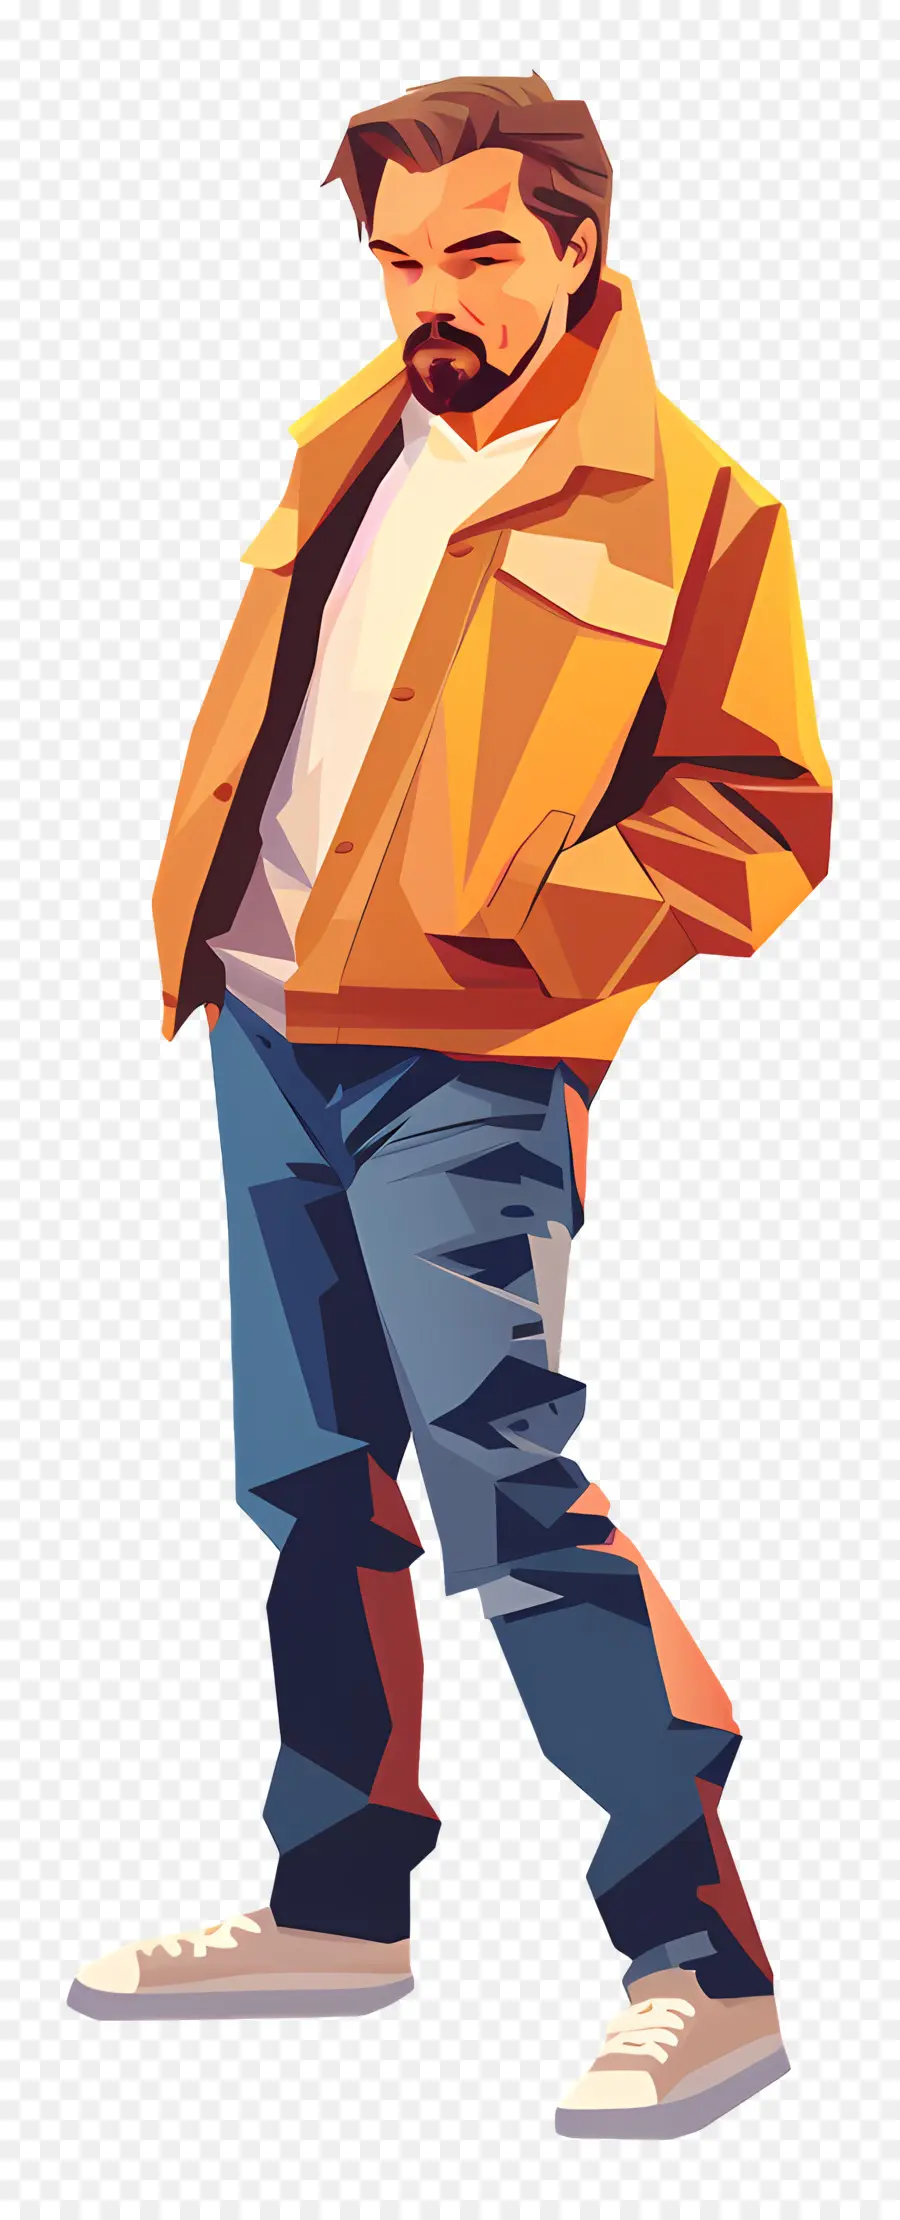 Leonardo dicaprio áo khoác denim jeans tay trong túi râu - Người đàn ông mặc áo khoác denim và quần jean nhìn xuống